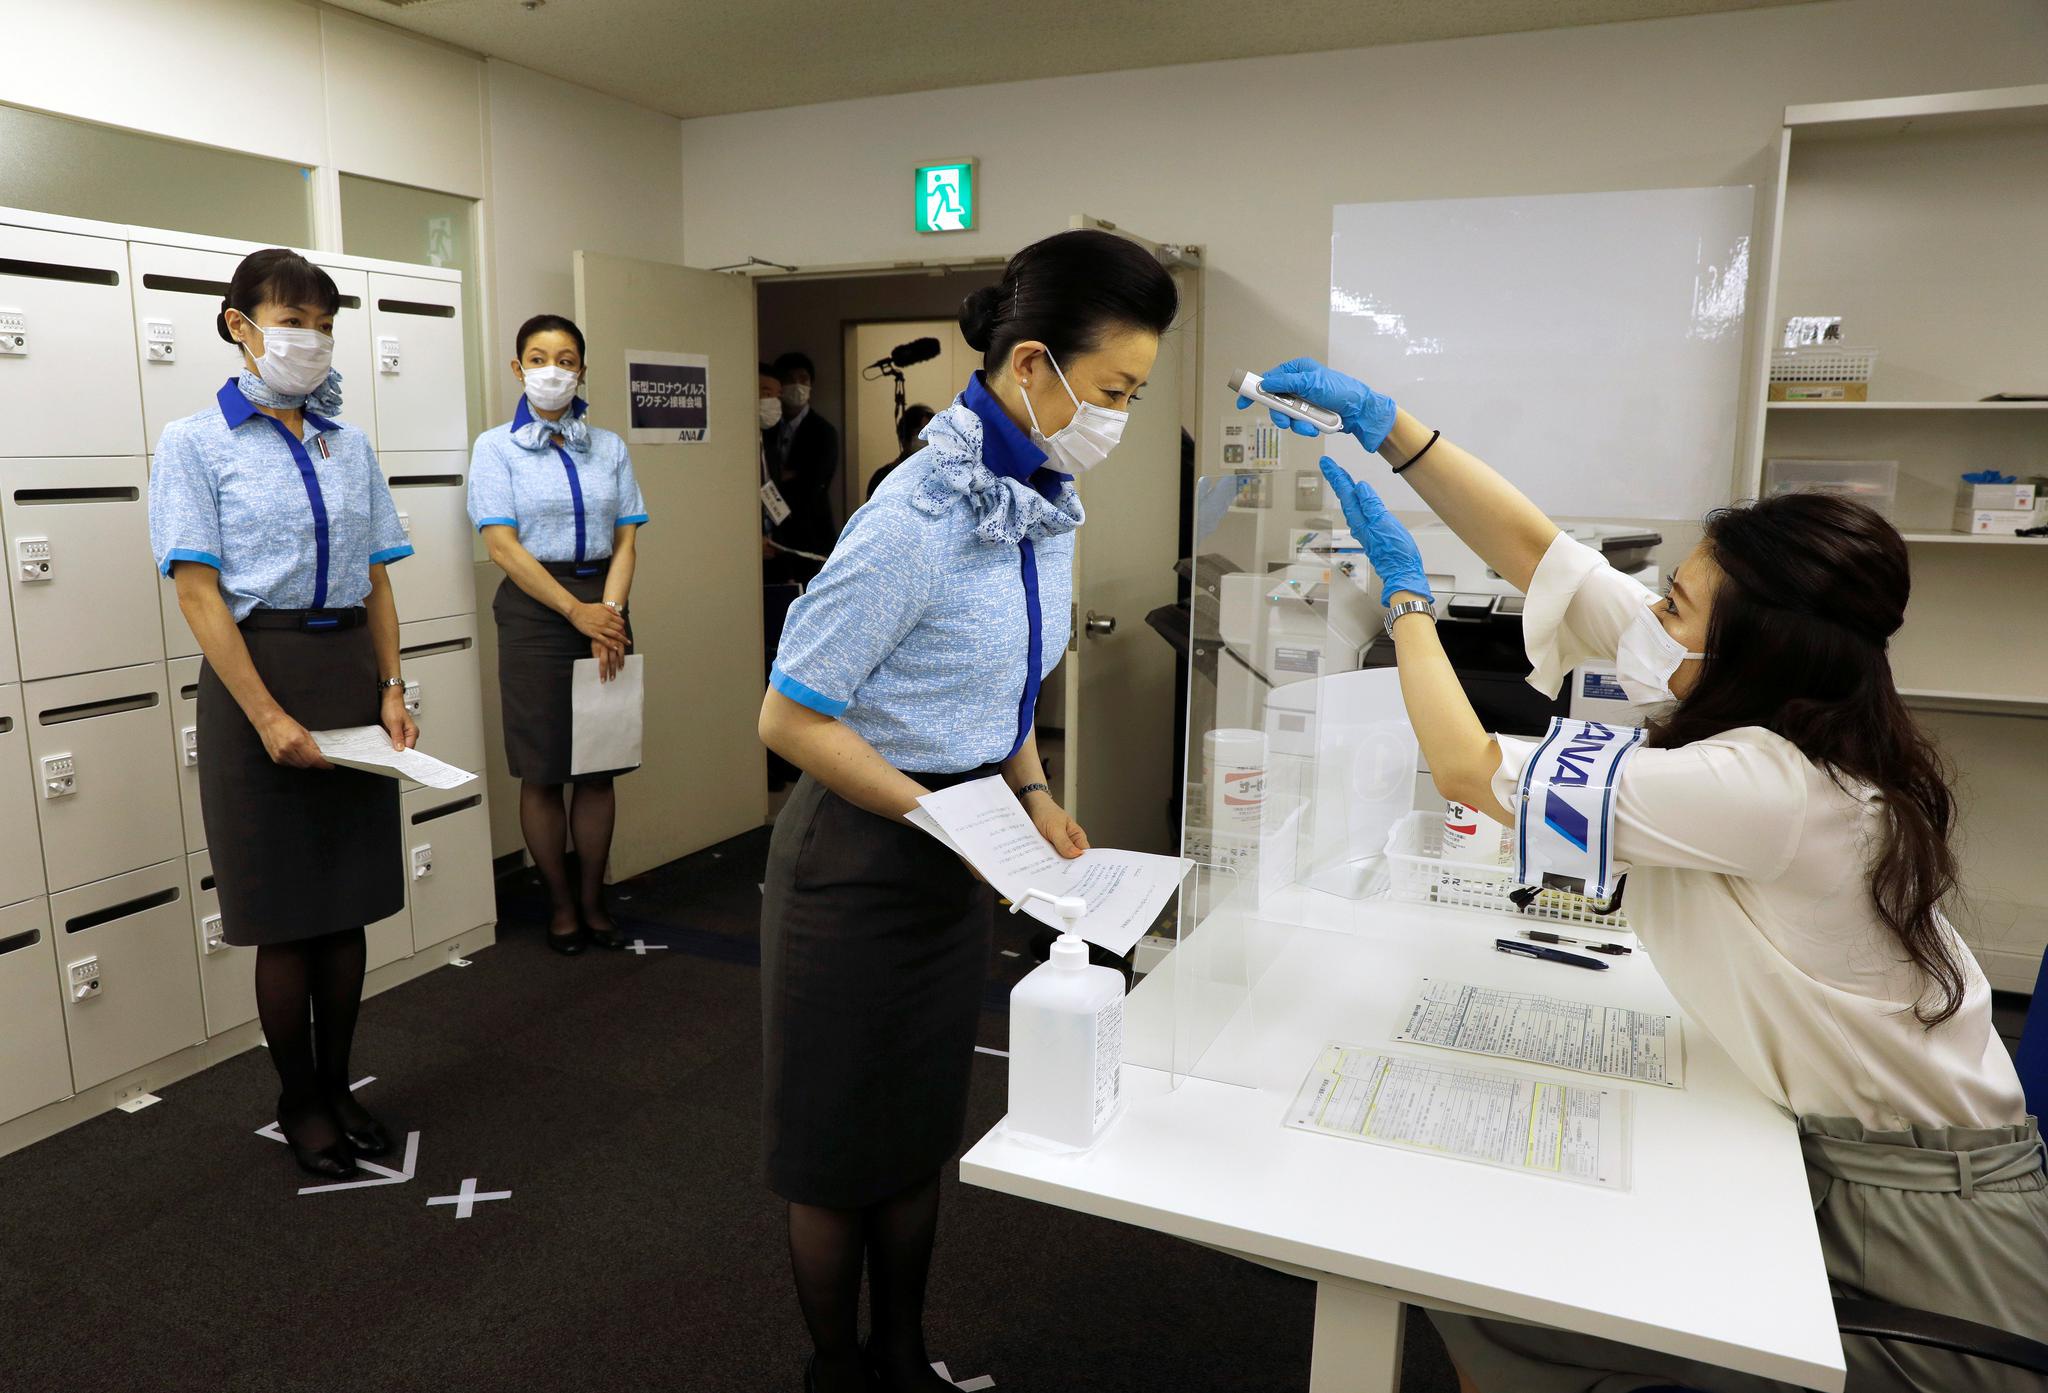 6月13日,日本全日空航空公司空乘人员在东京羽田机场接种新冠疫苗前